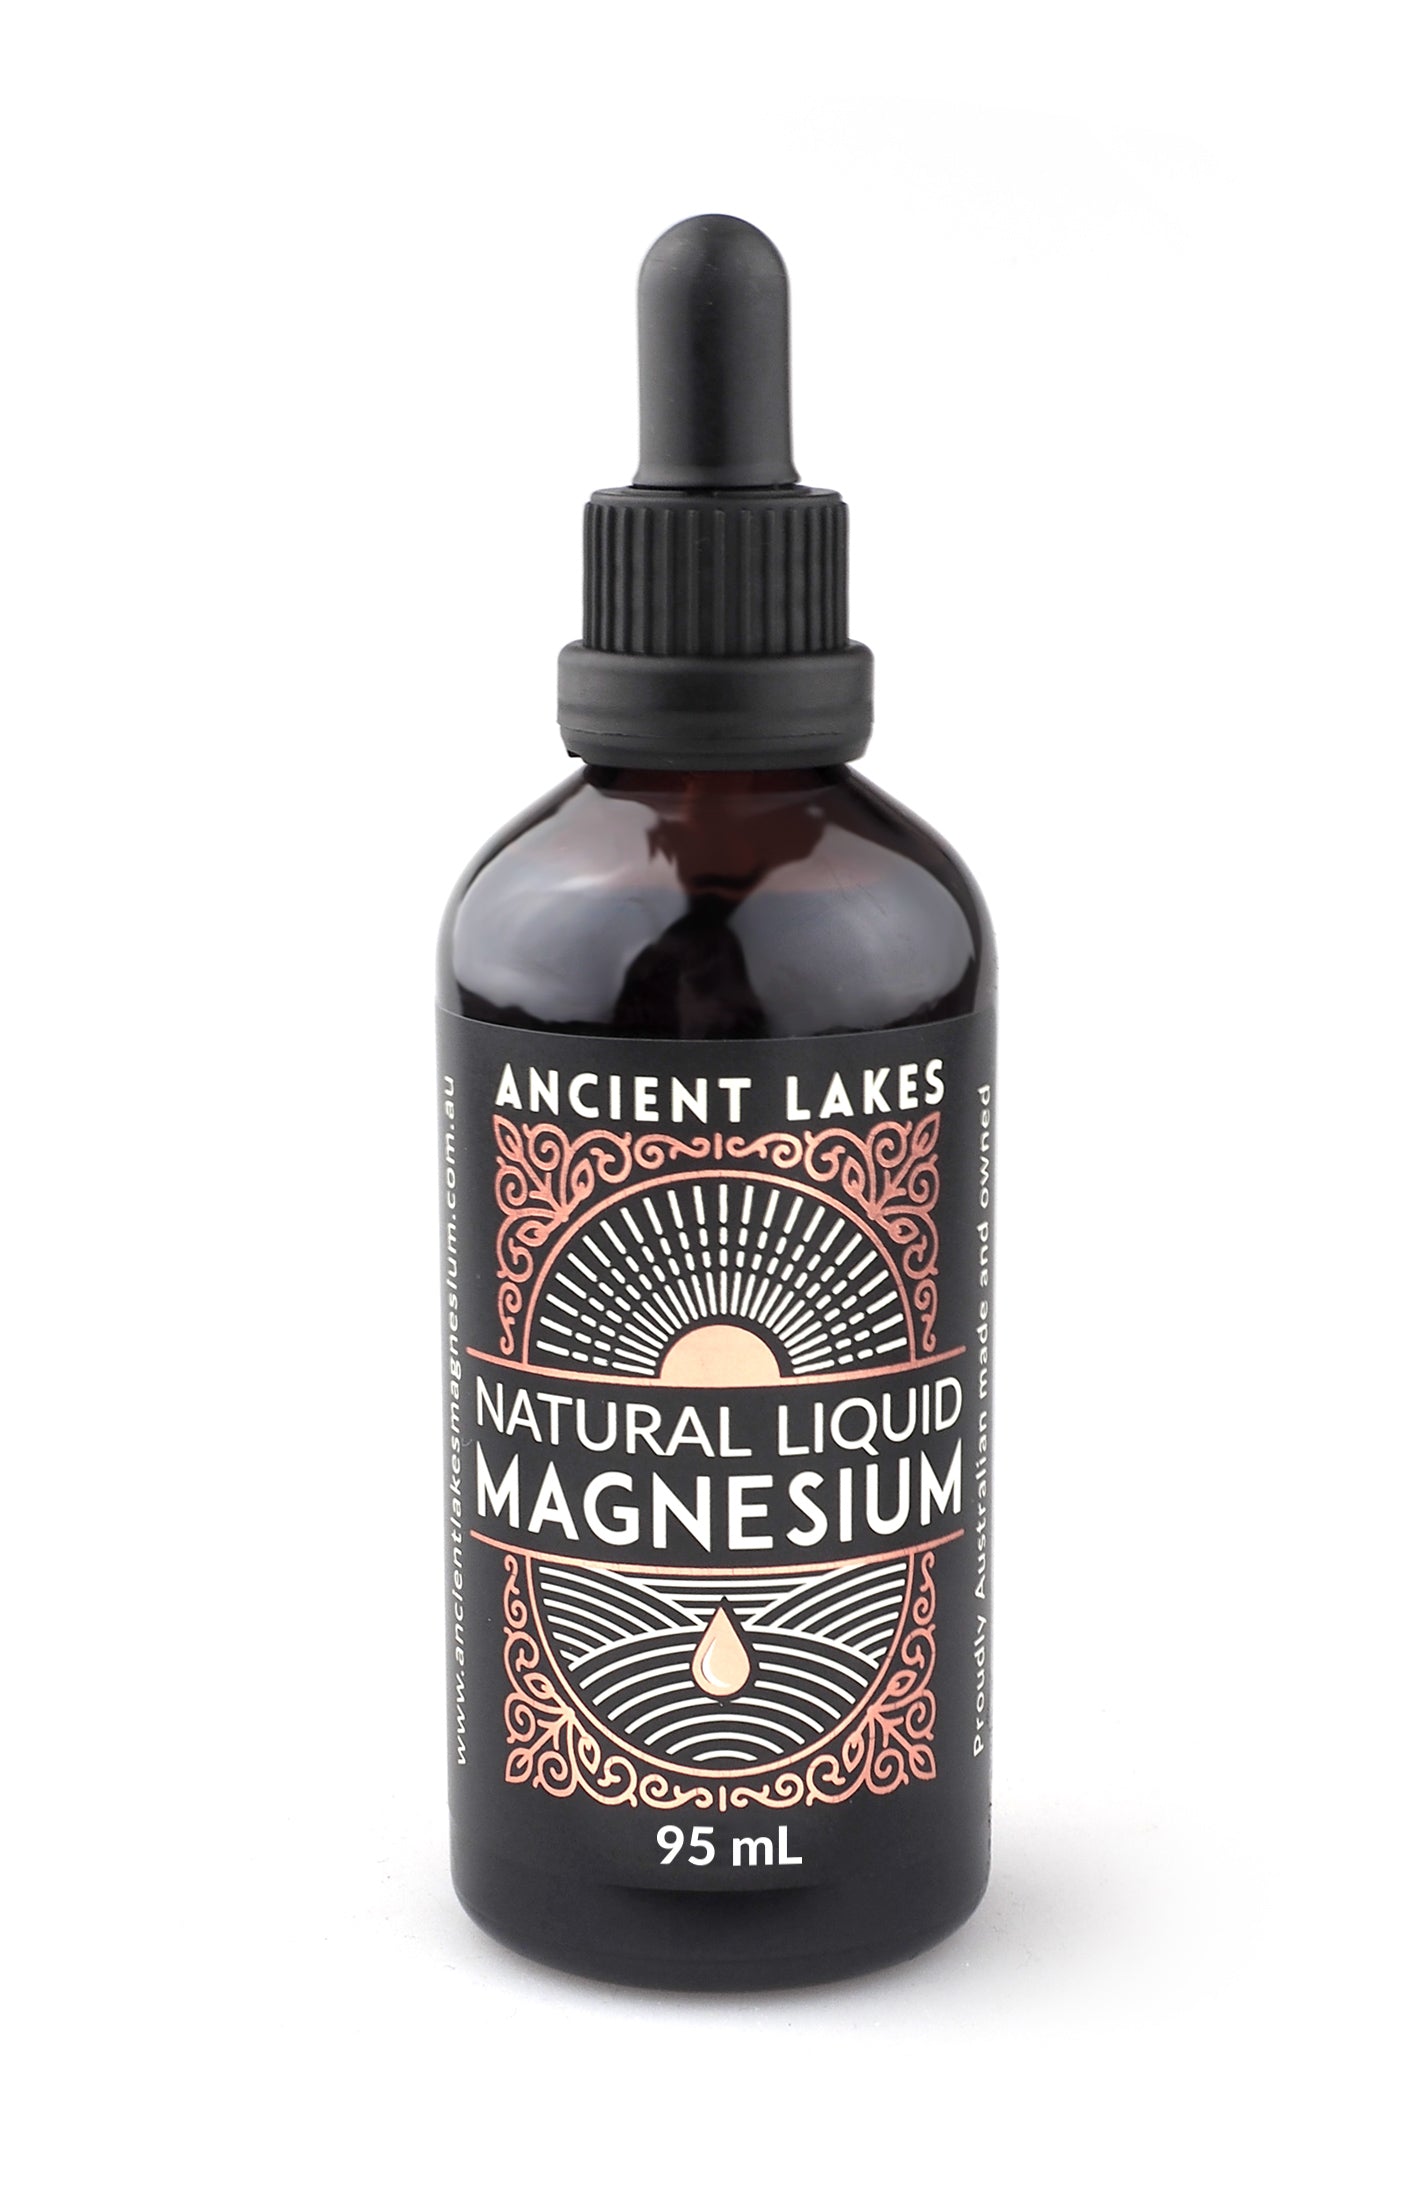 Best selling liquid magnesium Australian product